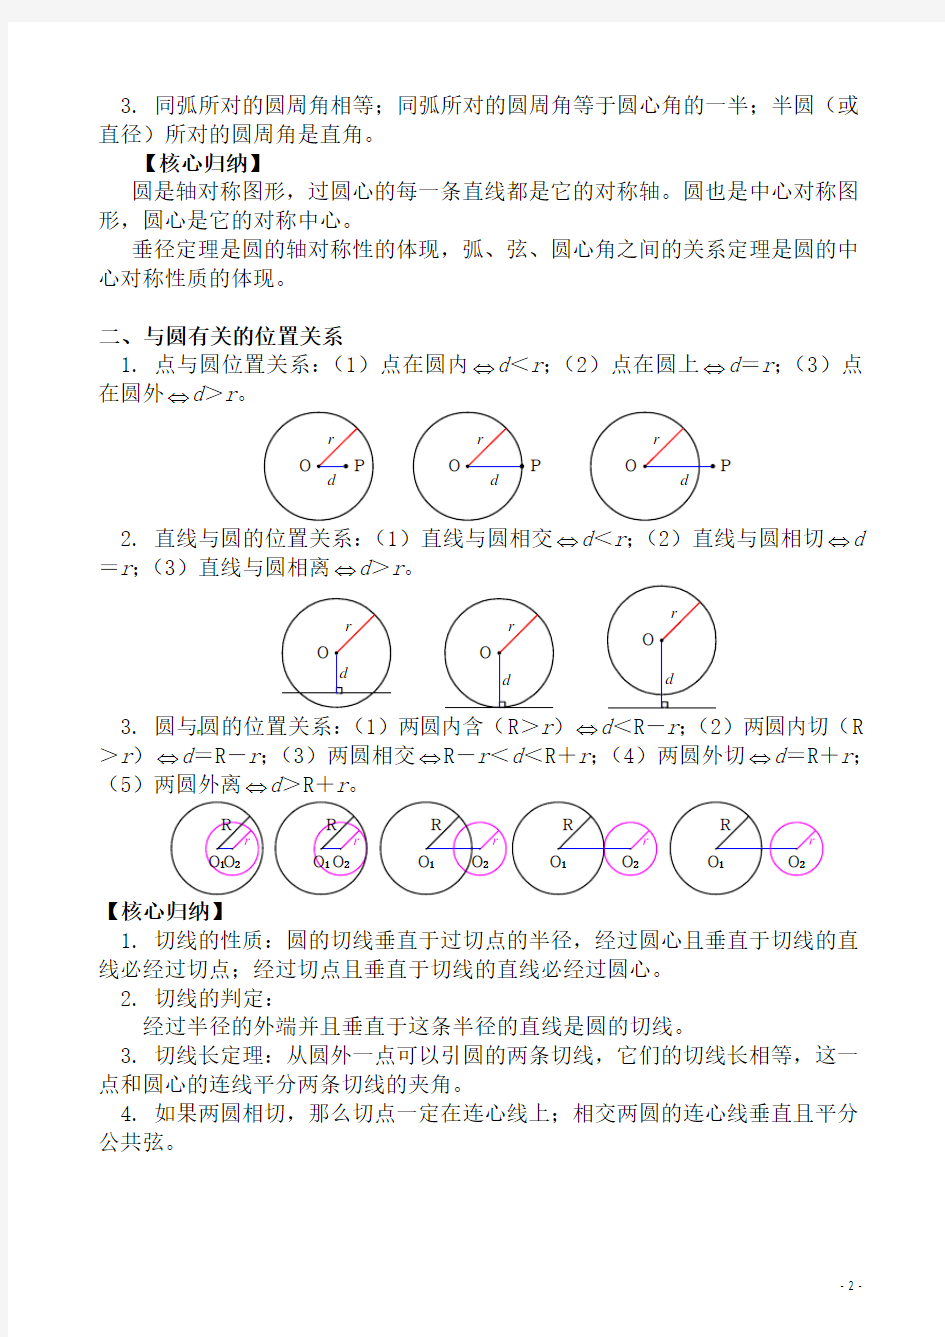 (名师整理)人教版数学中考《圆的综合应用》专题复习精品教案